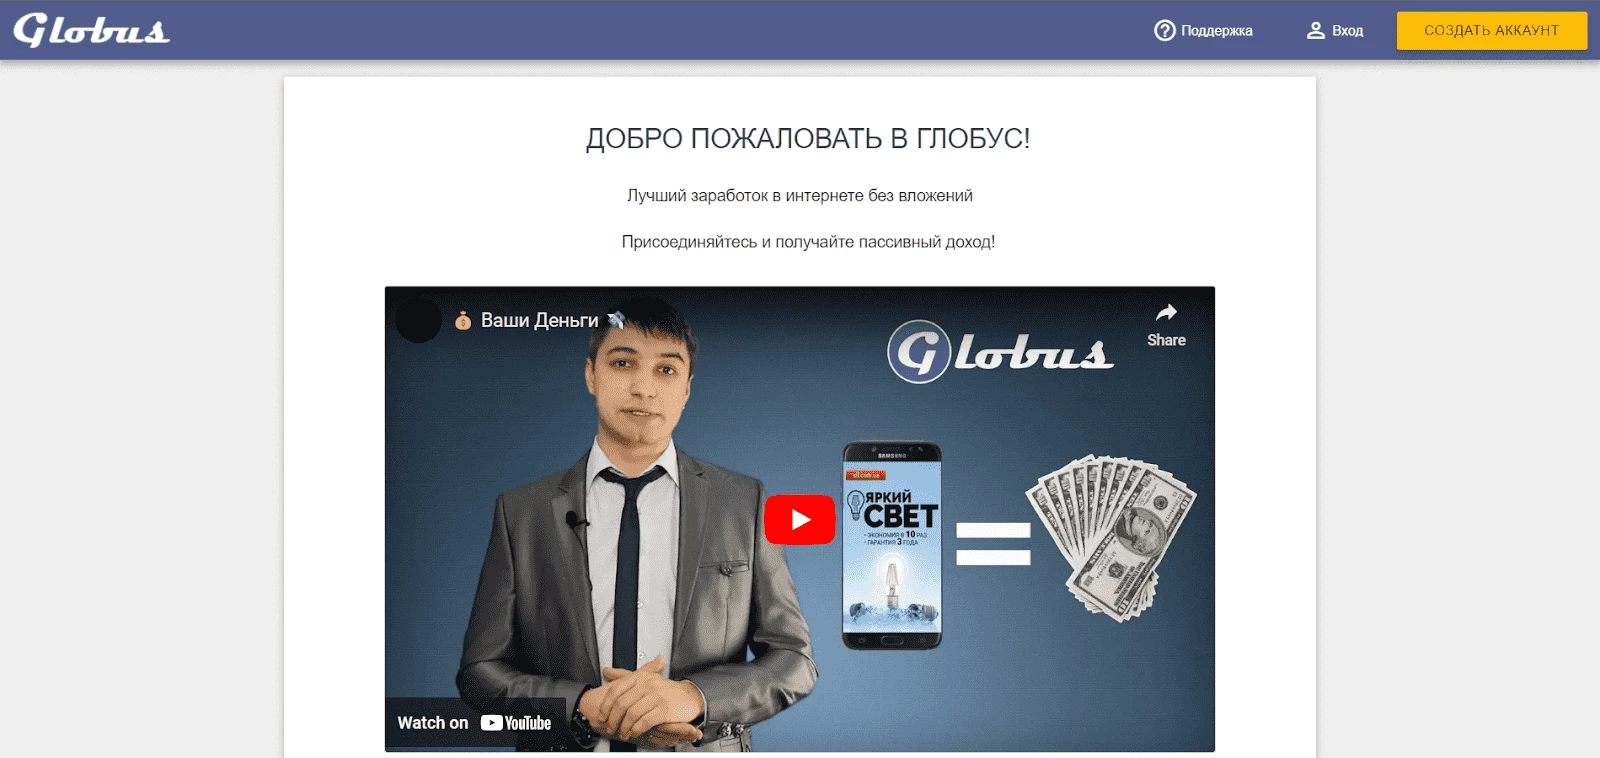 Globus-Inter - сервис для заработка на просмотре рекламы в интернете